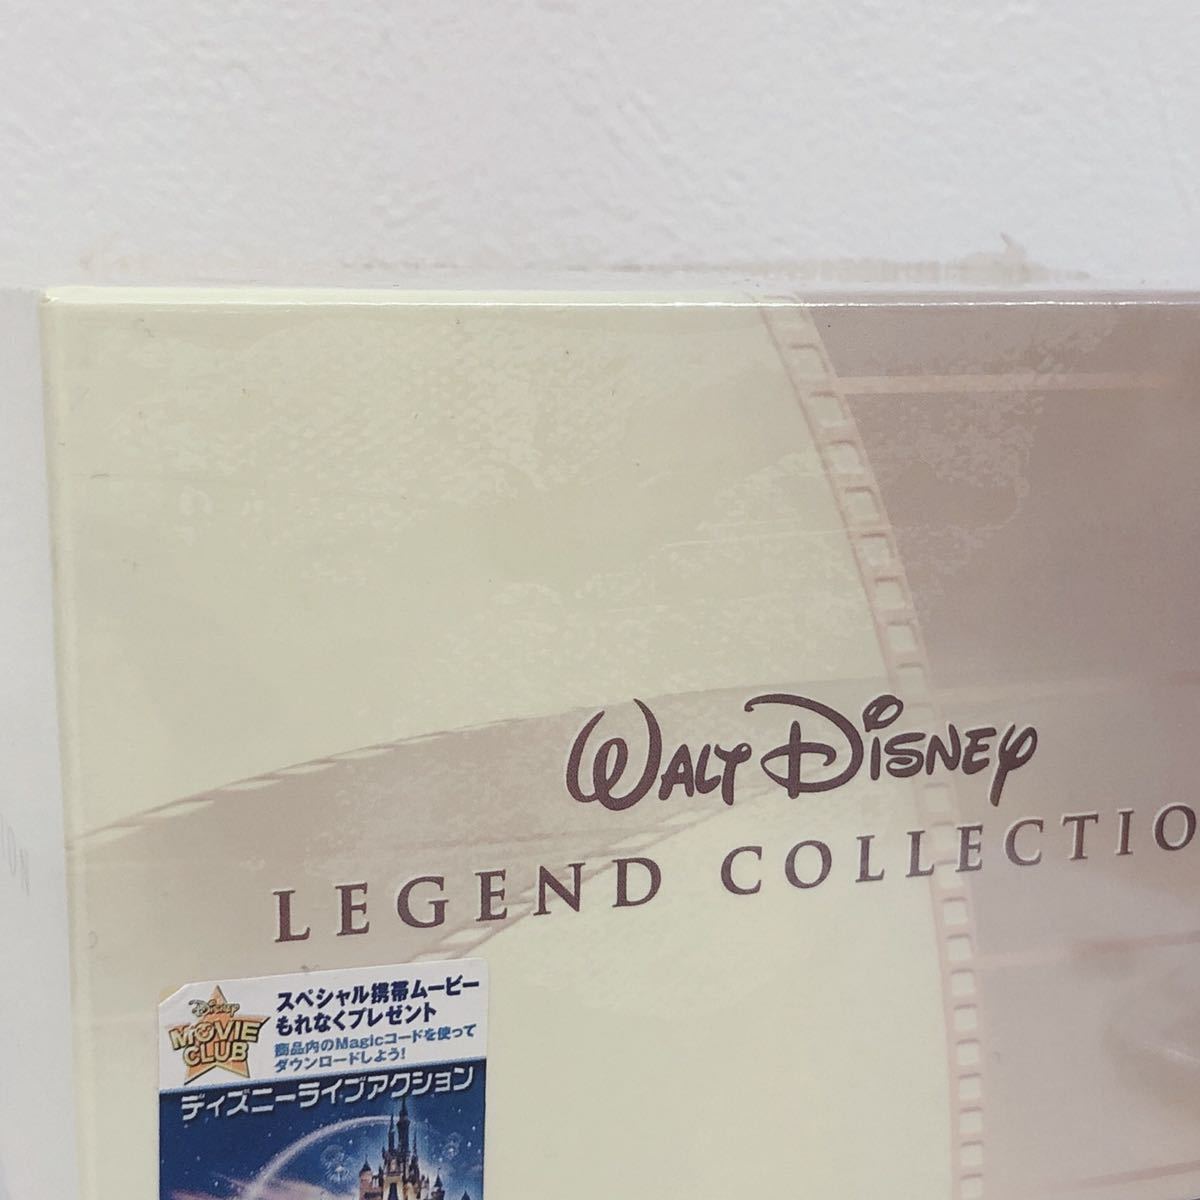 ☆新品未開封☆ WALT Disney LEGEND COLLECTION ウォルトディズニー レジェンドコレクション DVD-BOX 9タイトル 送料無料 